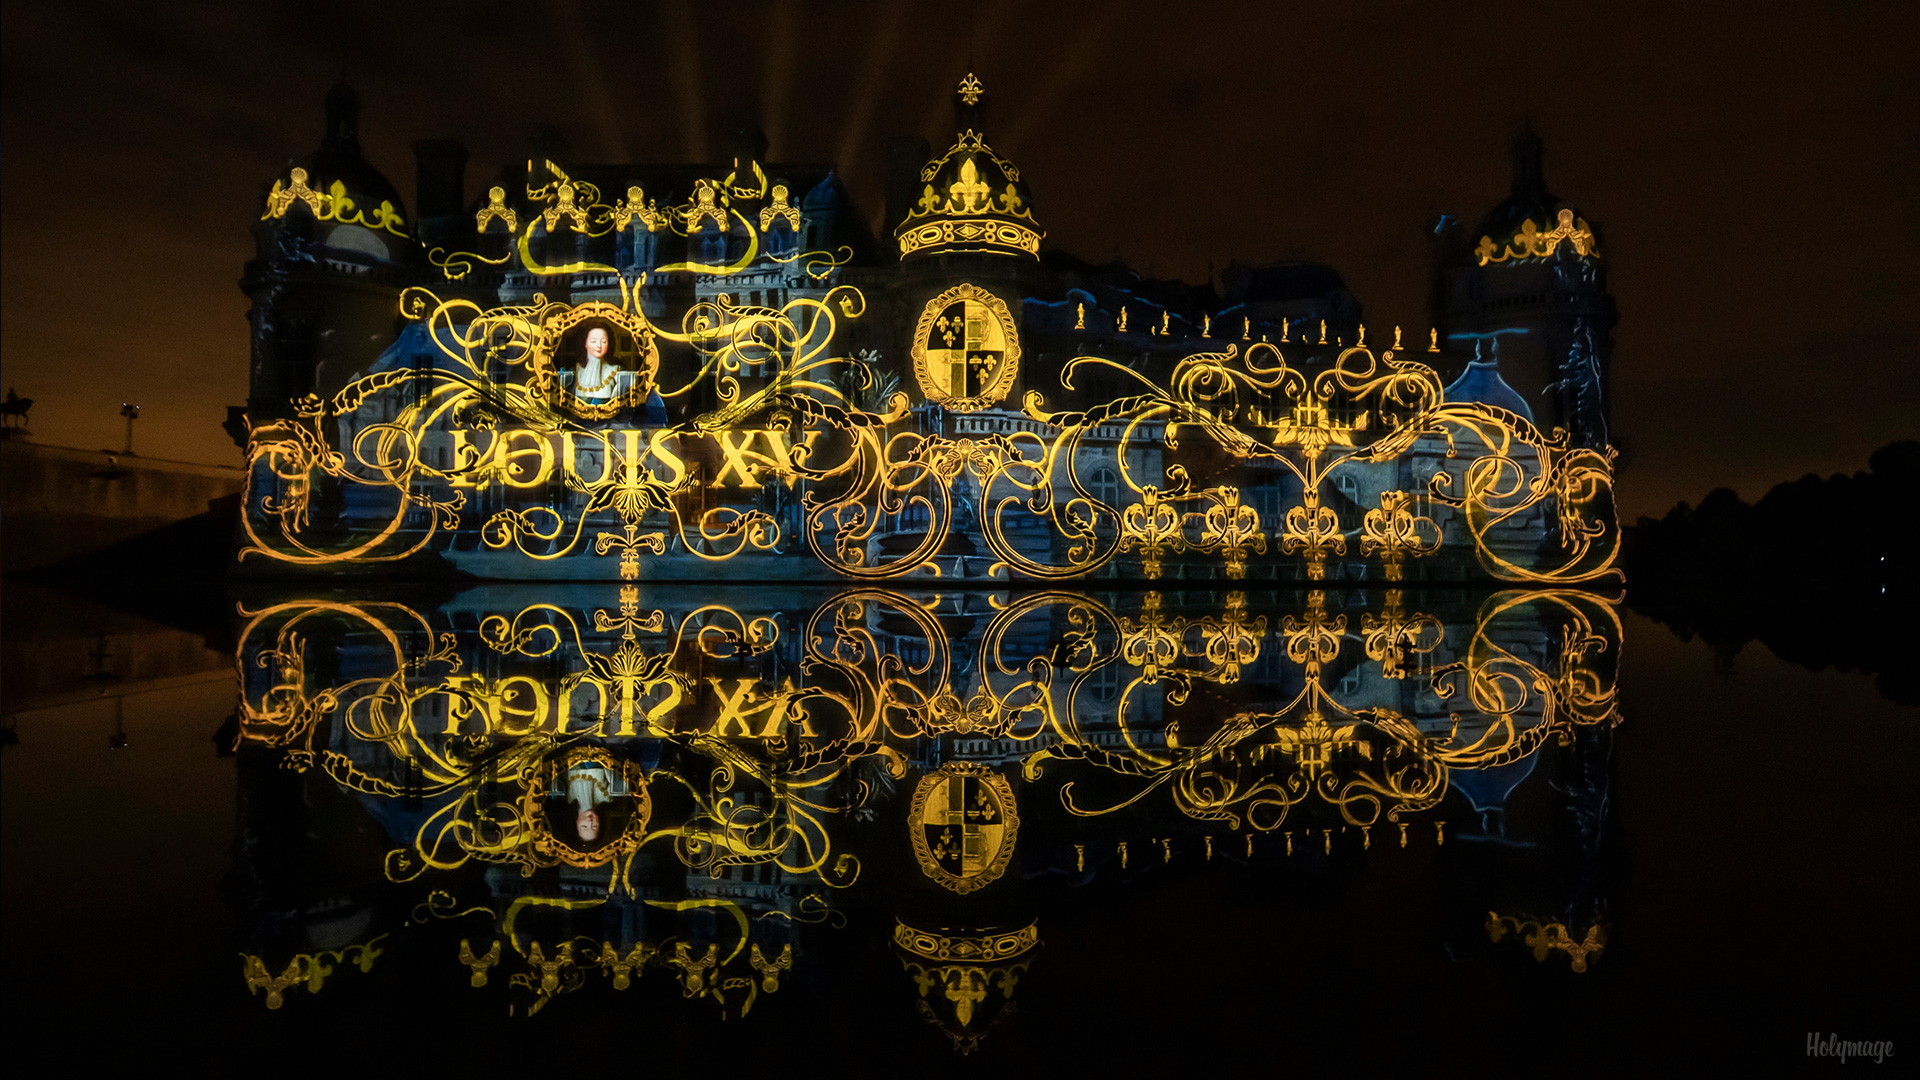 Le rocher des trésors 2 - Chantilly - Louis XV - Video Mapping Monumental 2022 @holymage @delacroixstudio